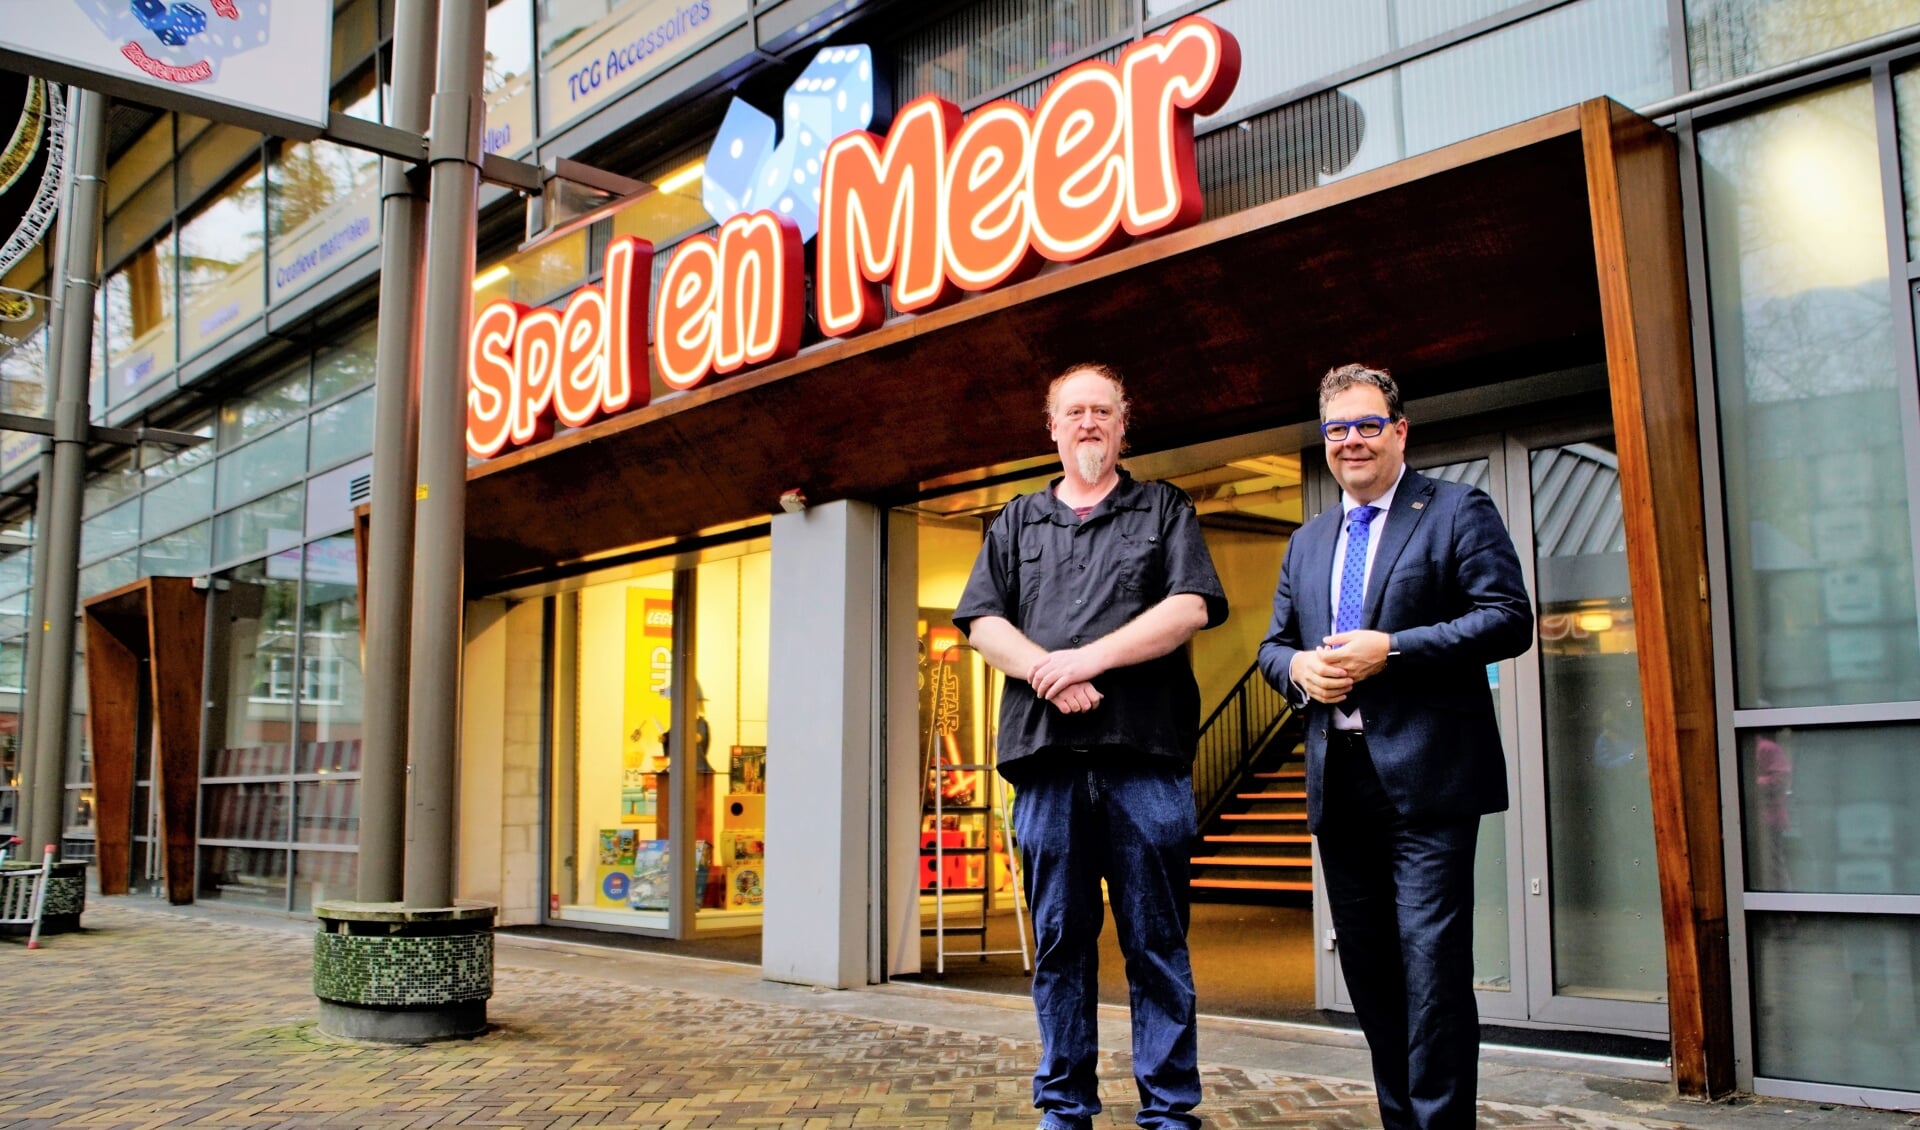 Londen In hoeveelheid Citaat Spel en Meer is de grootste spellenwinkel van Nederland - Adverteren  Zoetermeer | Streekblad | Krant en Online